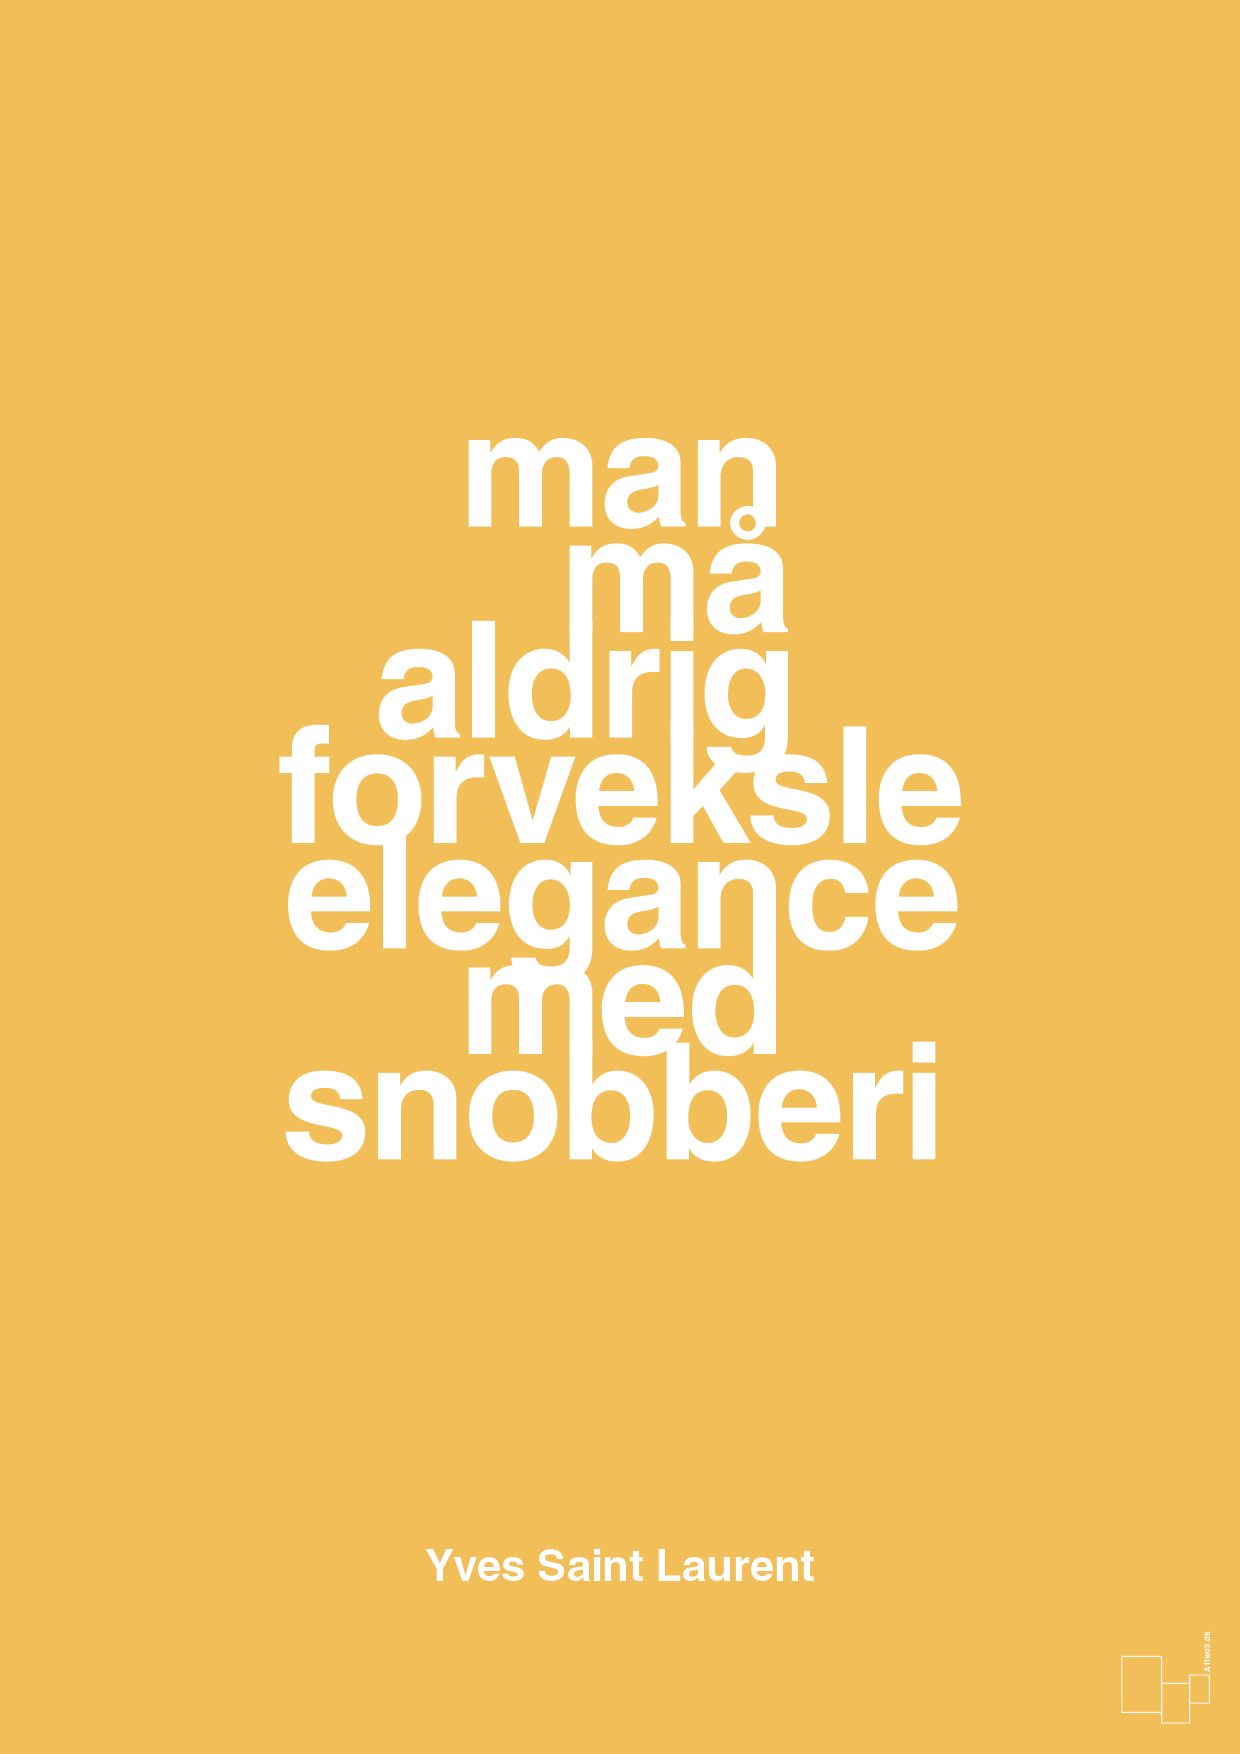 man må aldrig forveksle elegance med snobberi - Plakat med Citater i Honeycomb